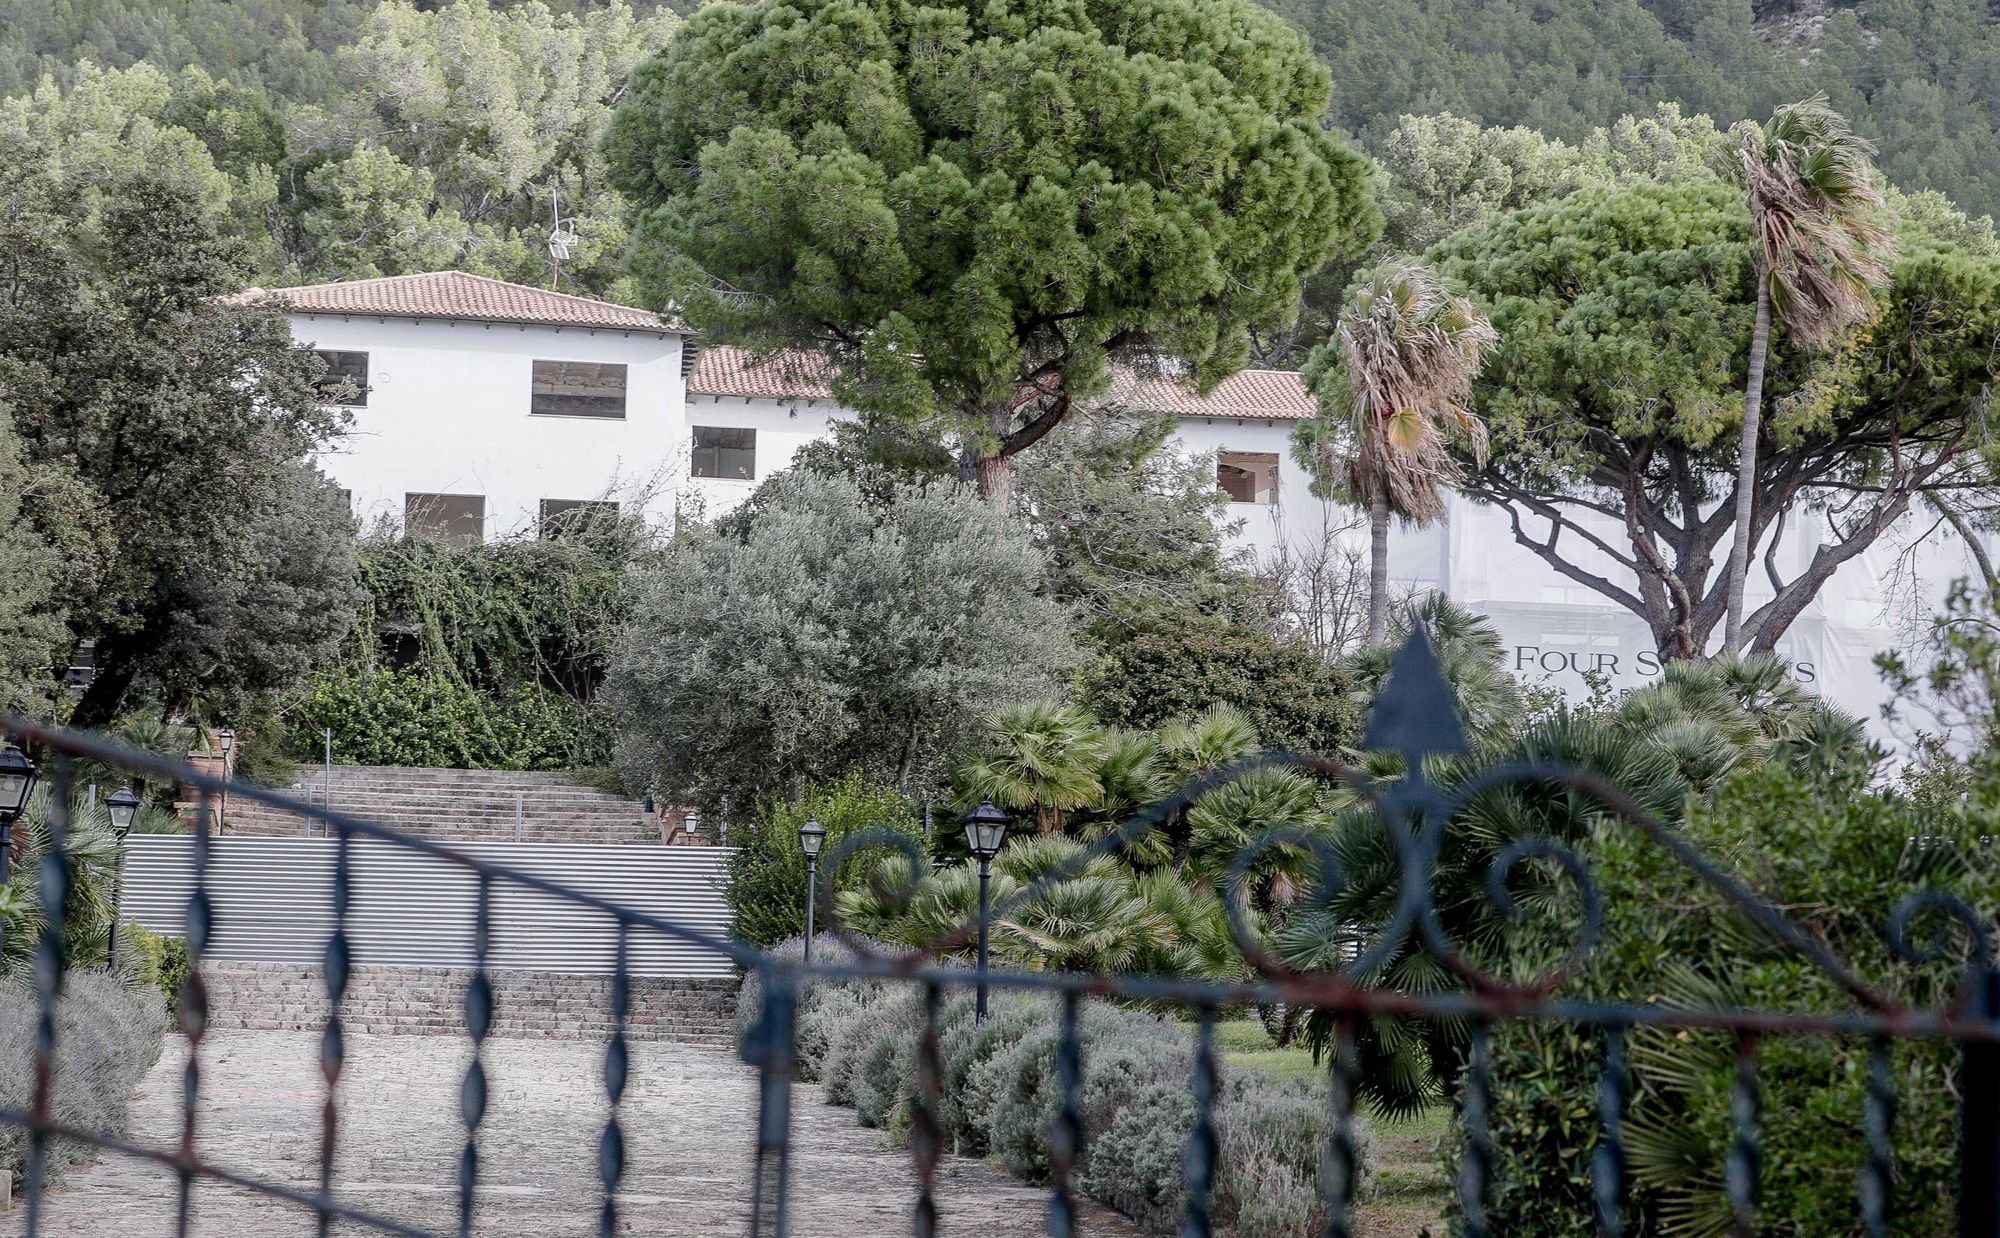 Vom Hotel Formentor auf Mallorca bleibt bei der Sanierung nur noch die Fassade übrig